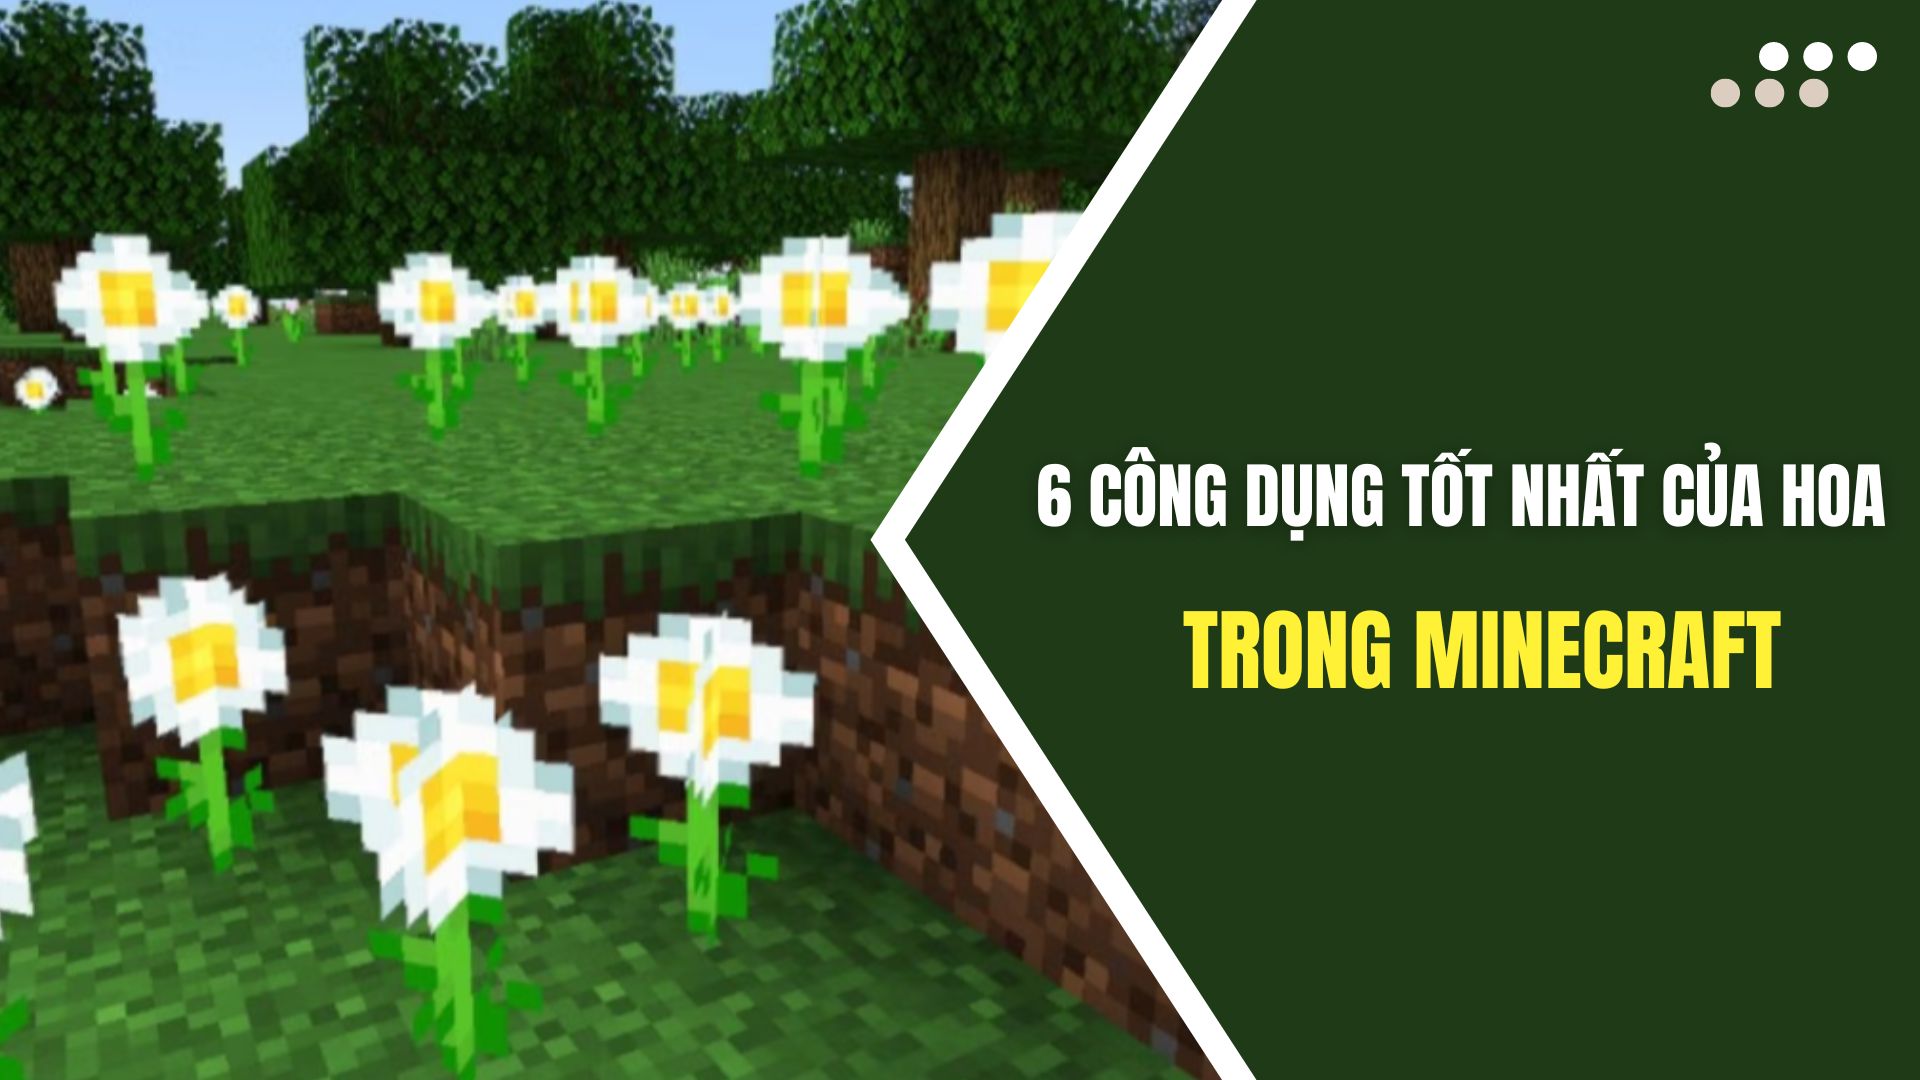 Minecraft là trò chơi kinh điển với nhiều tùy chọn sáng tạo. Bạn có muốn thử \'trồng\' một hòa mình hoa đẹp trong Minecraft không? Không những vậy, bạn còn có thể khai thác các công dụng tuyệt vời của hoa trong trò chơi này. Hãy xem hình ảnh để khám phá thêm những điều thú vị!